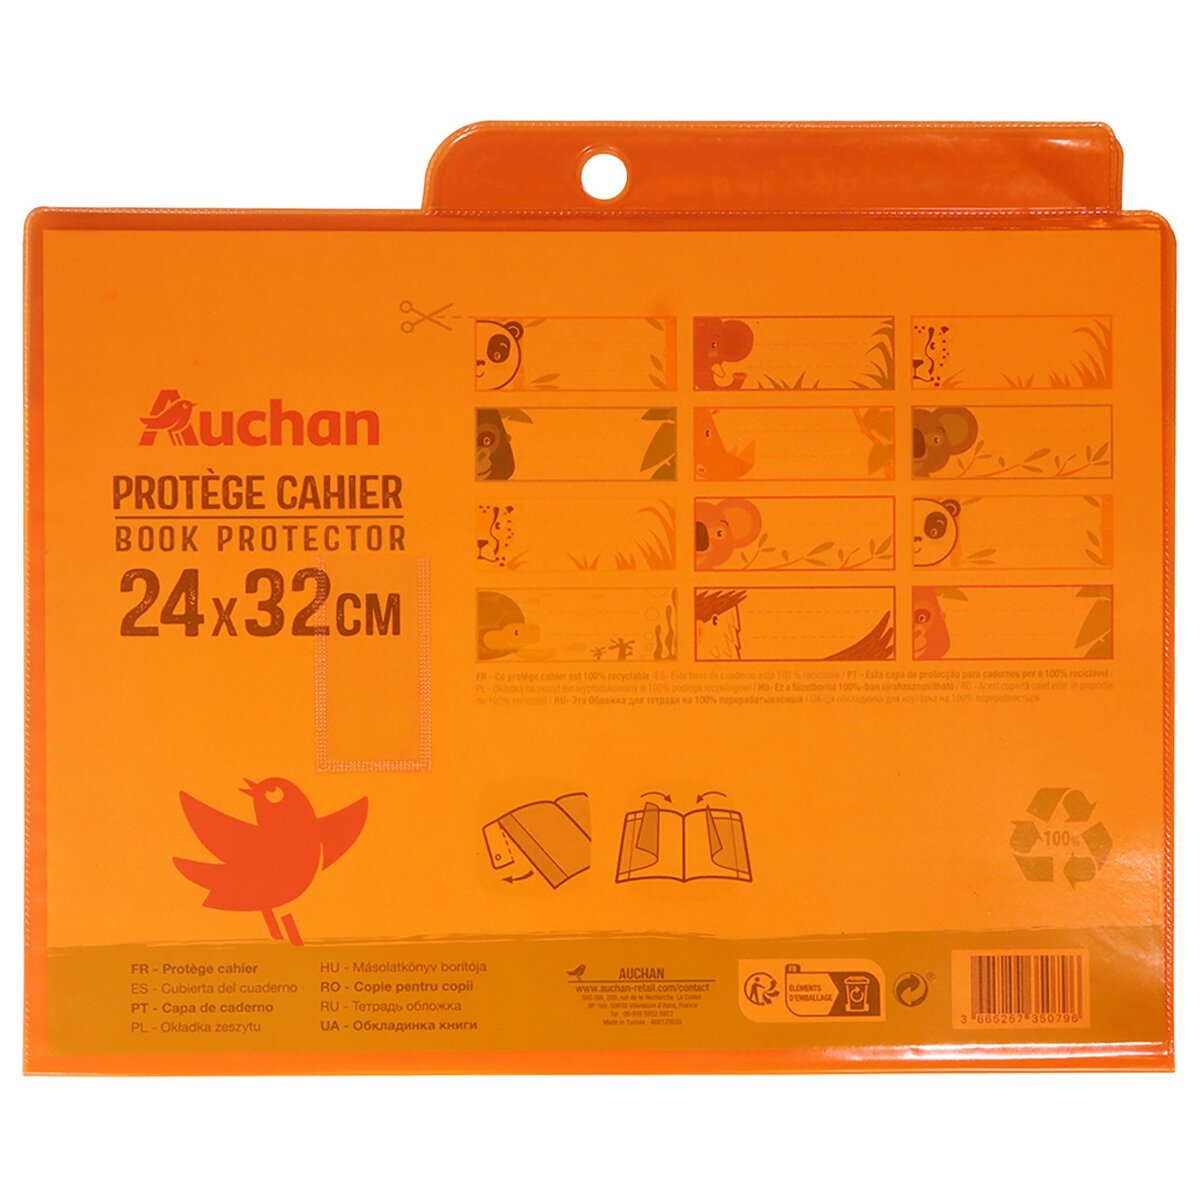 AUCHAN Protège cahier 24x32cm à rabats cristal orange translucide